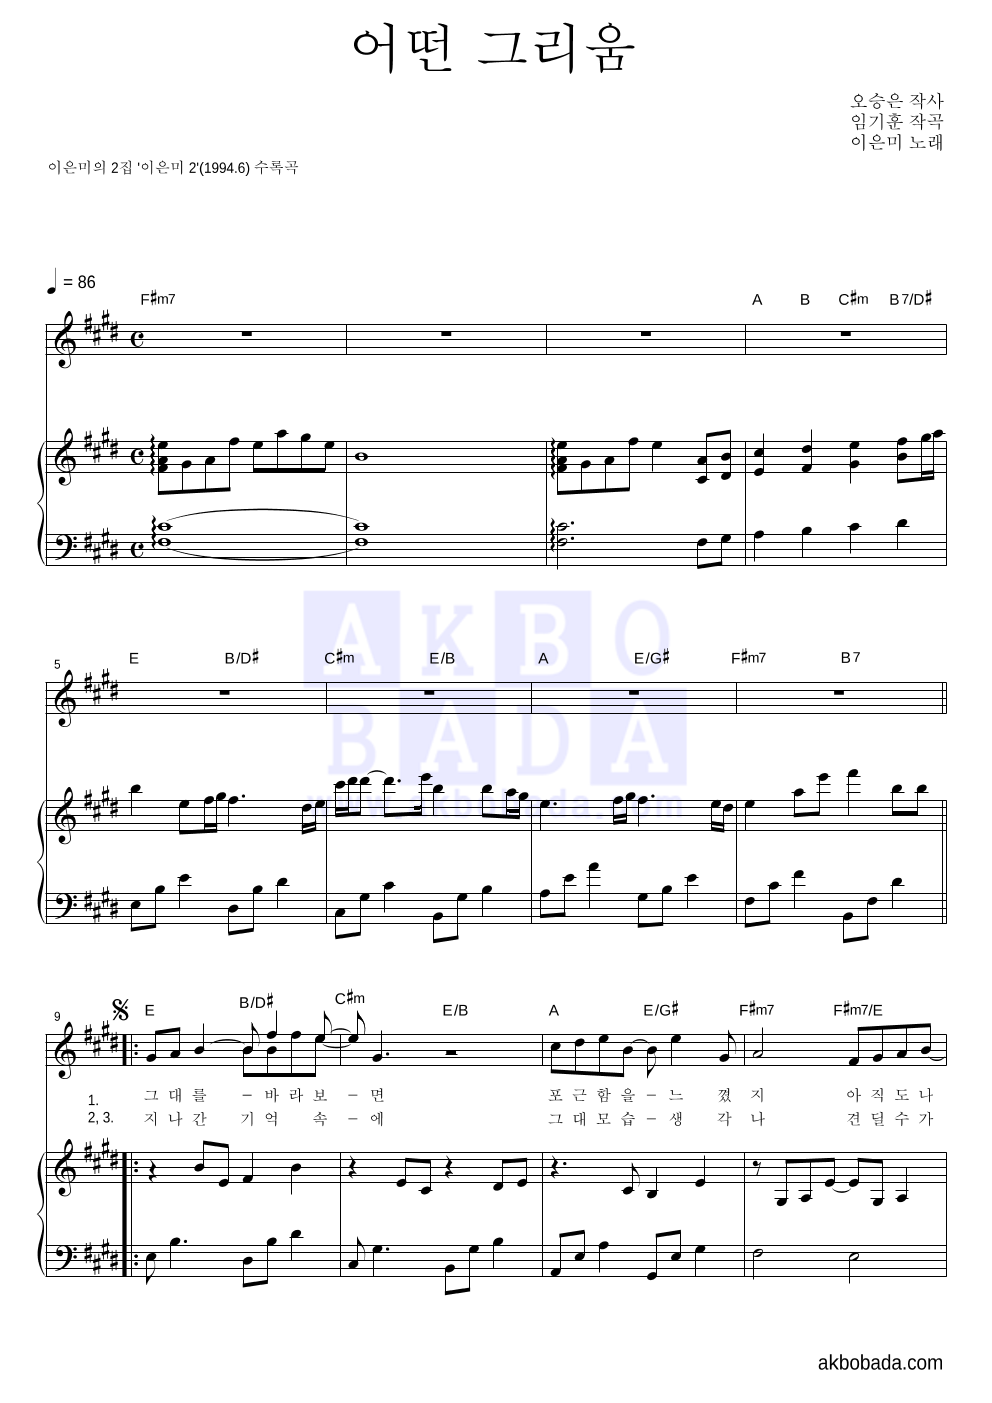 이은미 - 어떤 그리움 피아노 3단 악보 